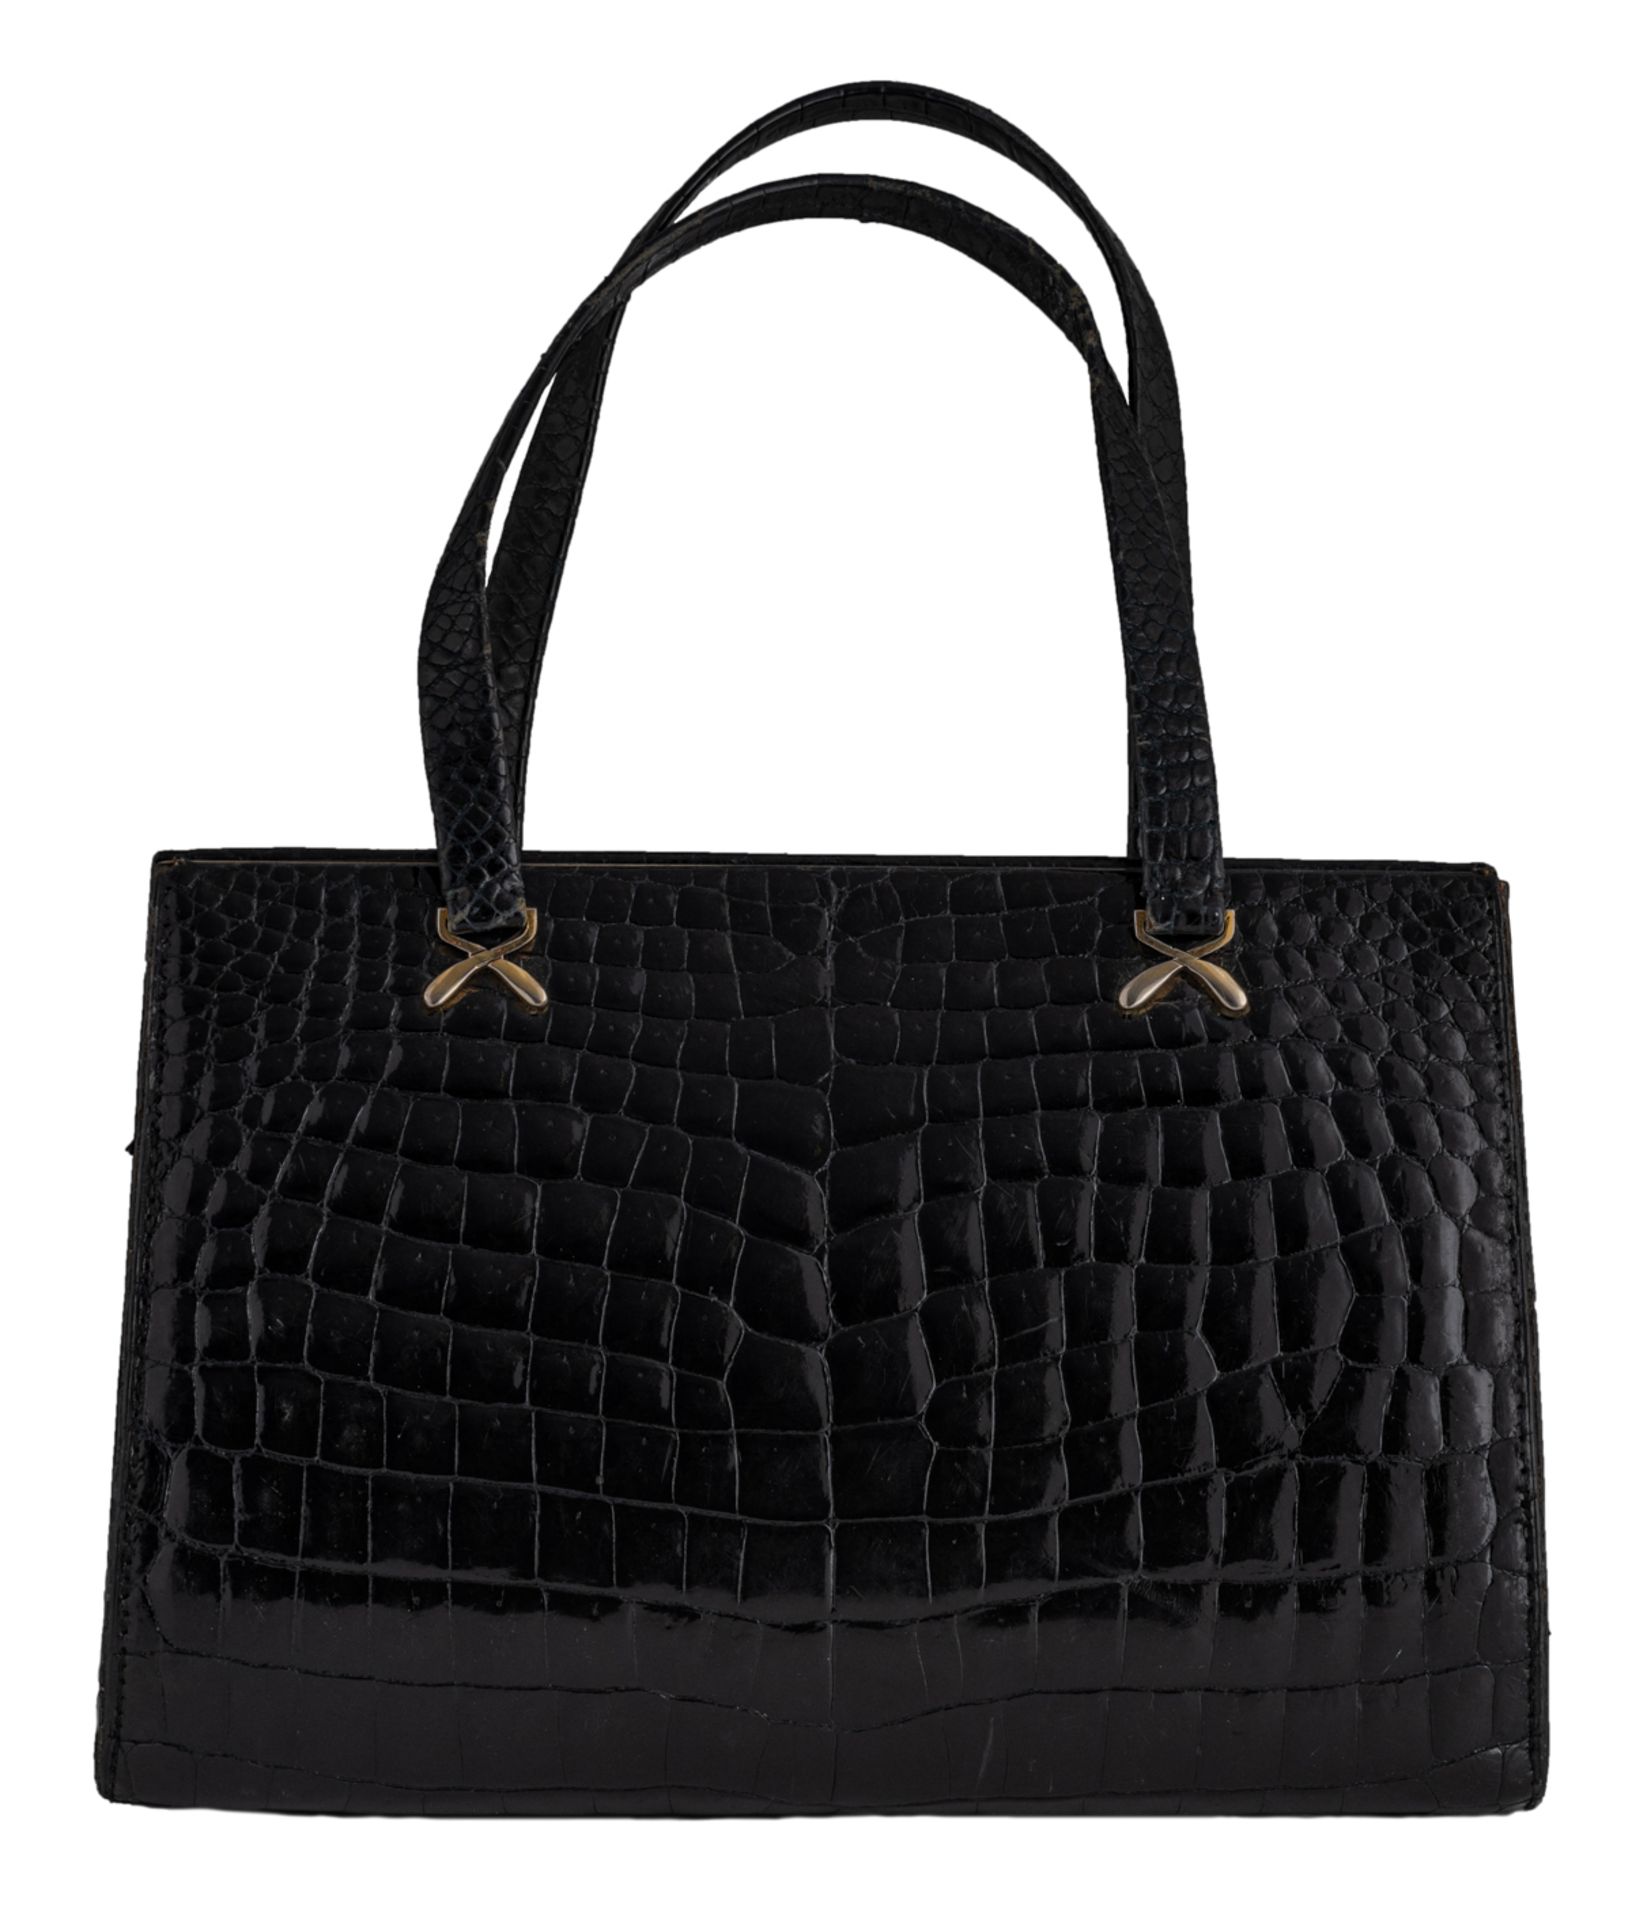 A Delvaux top handle handbag in black croco leather, H 18,5 x 28,5 cm